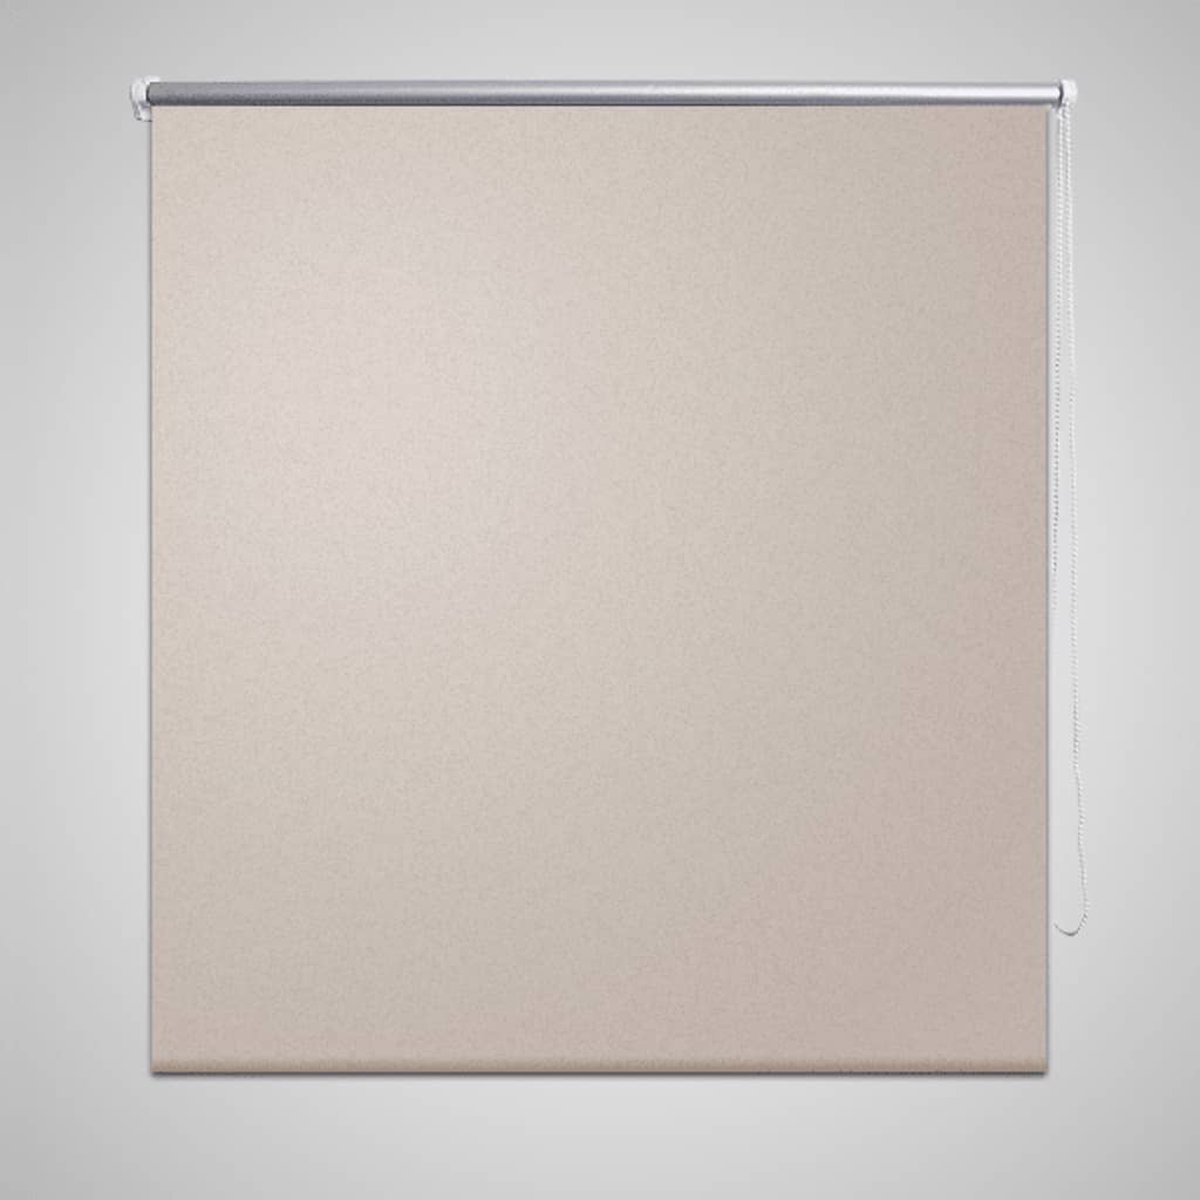 VidaLife Rolgordijn verduisterend 120x230 cm beige